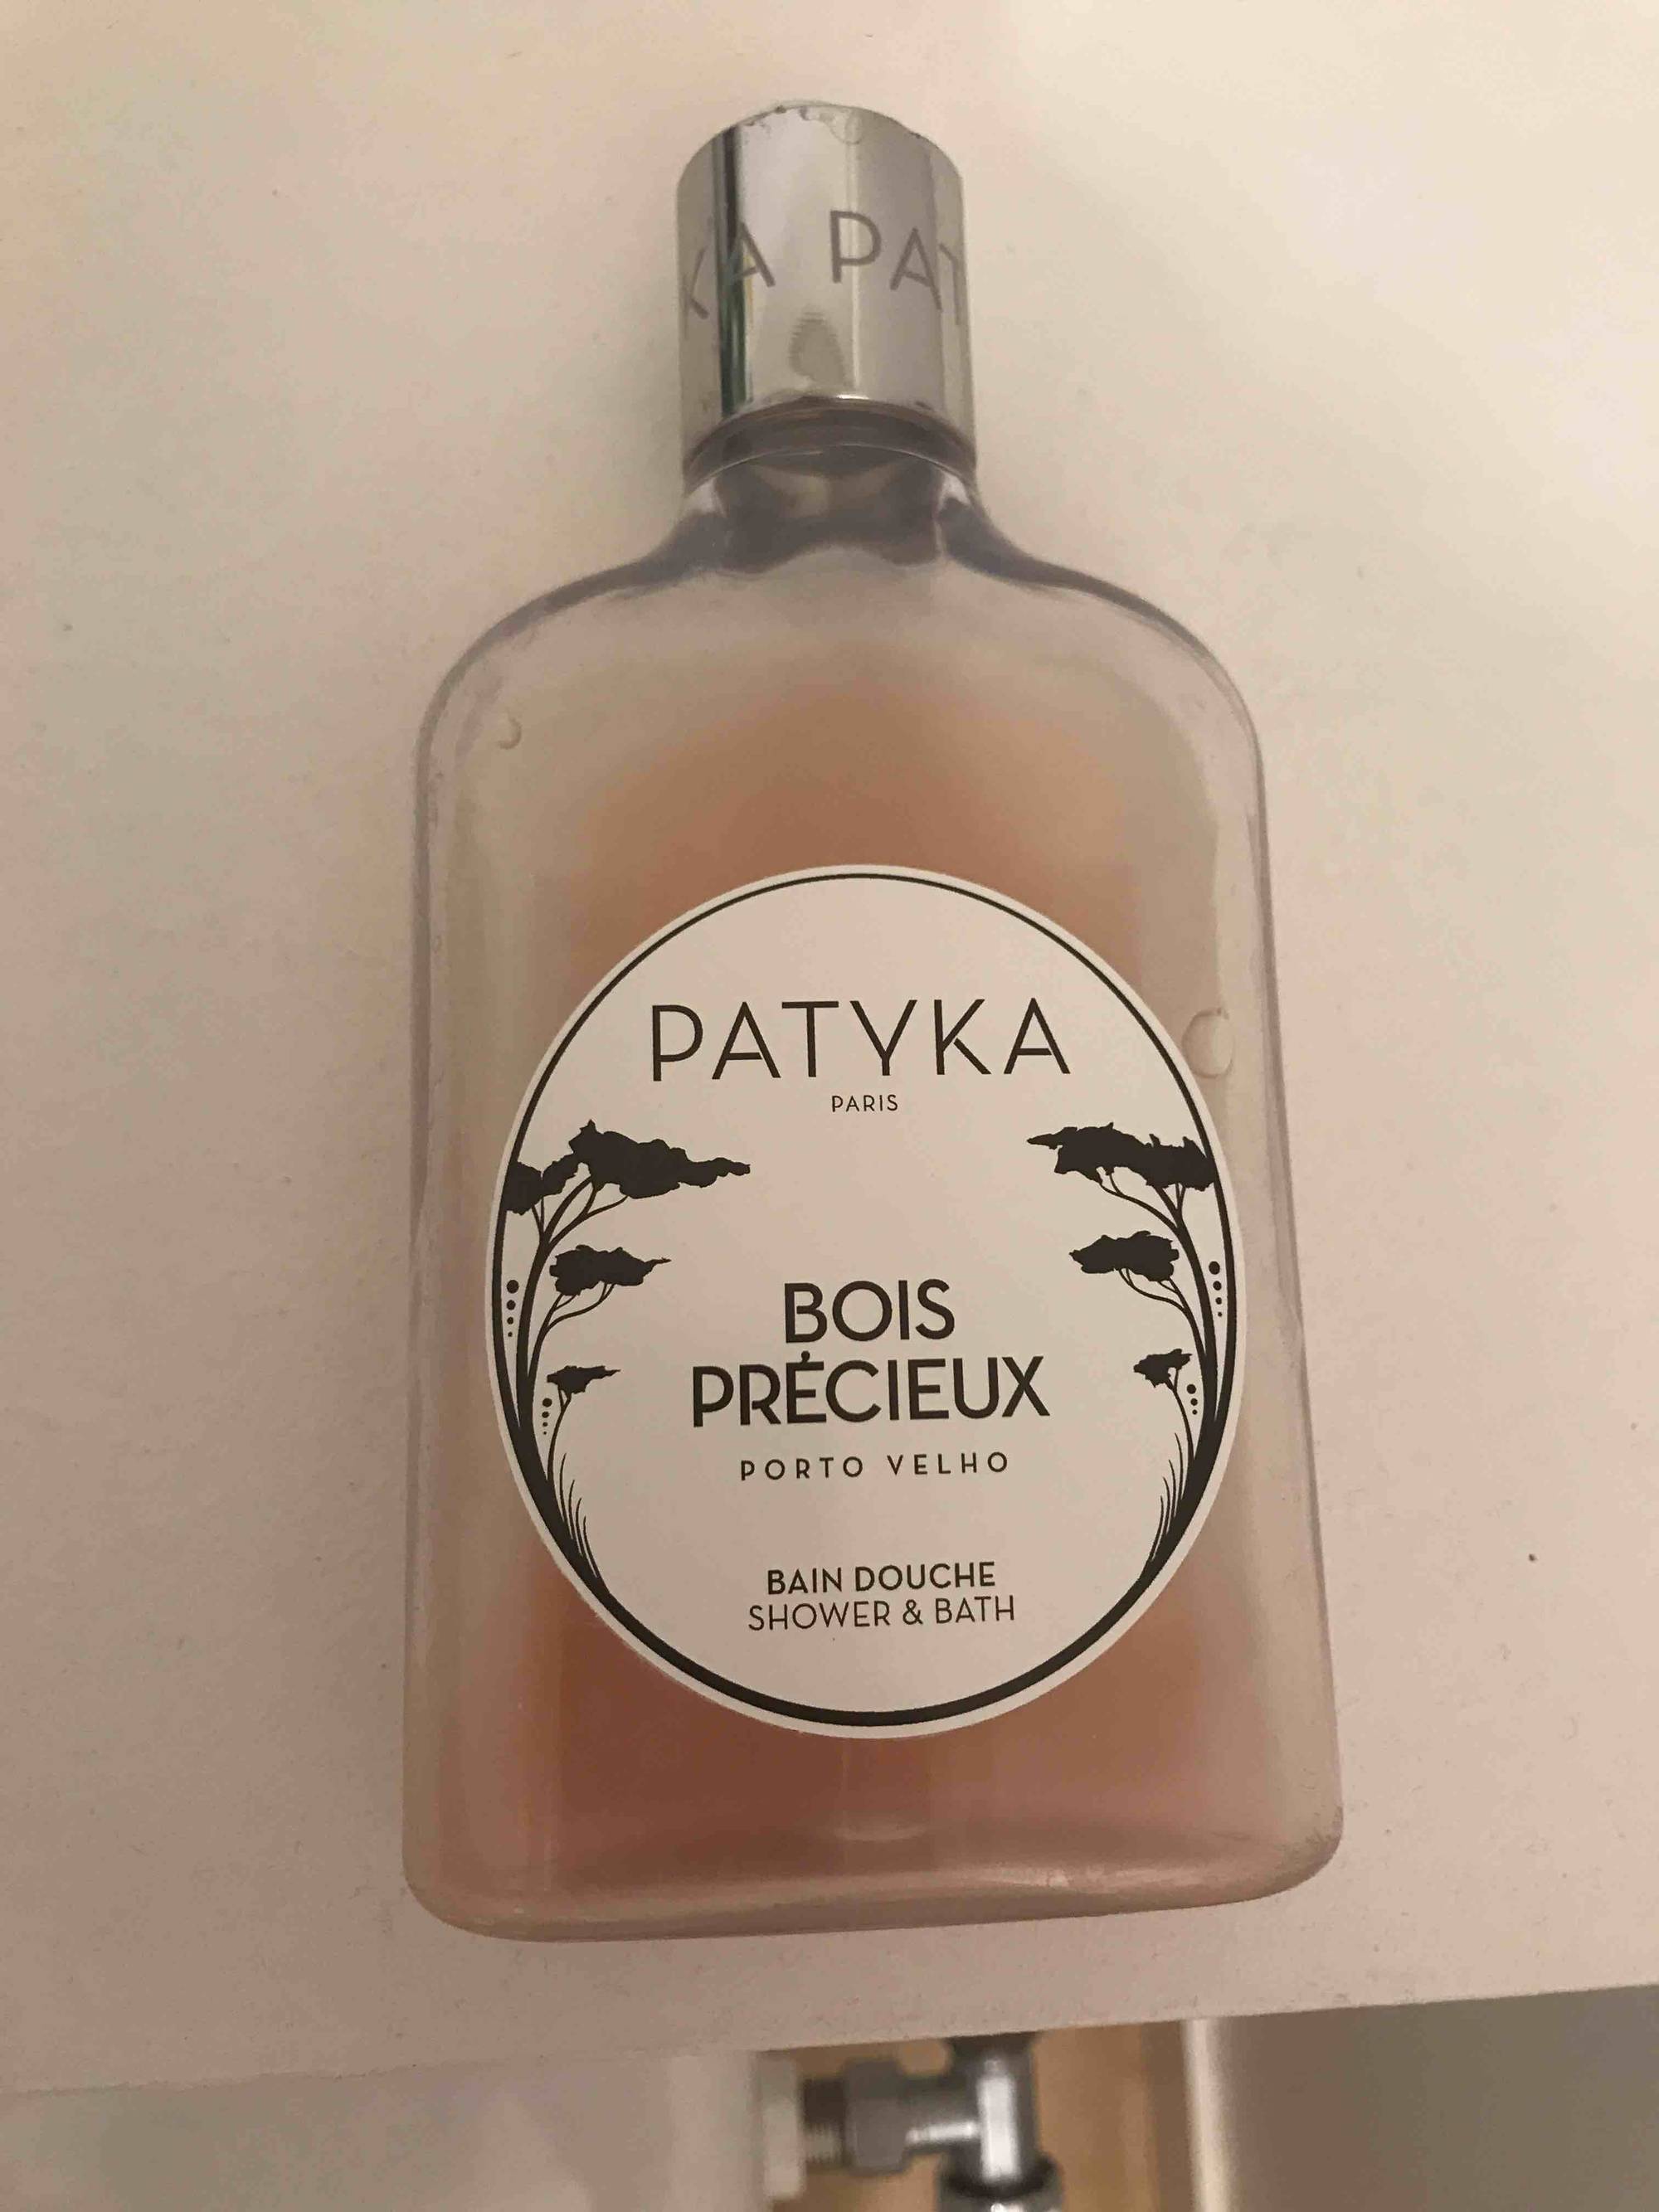 PATYKA - Bois précieux - Bain douche